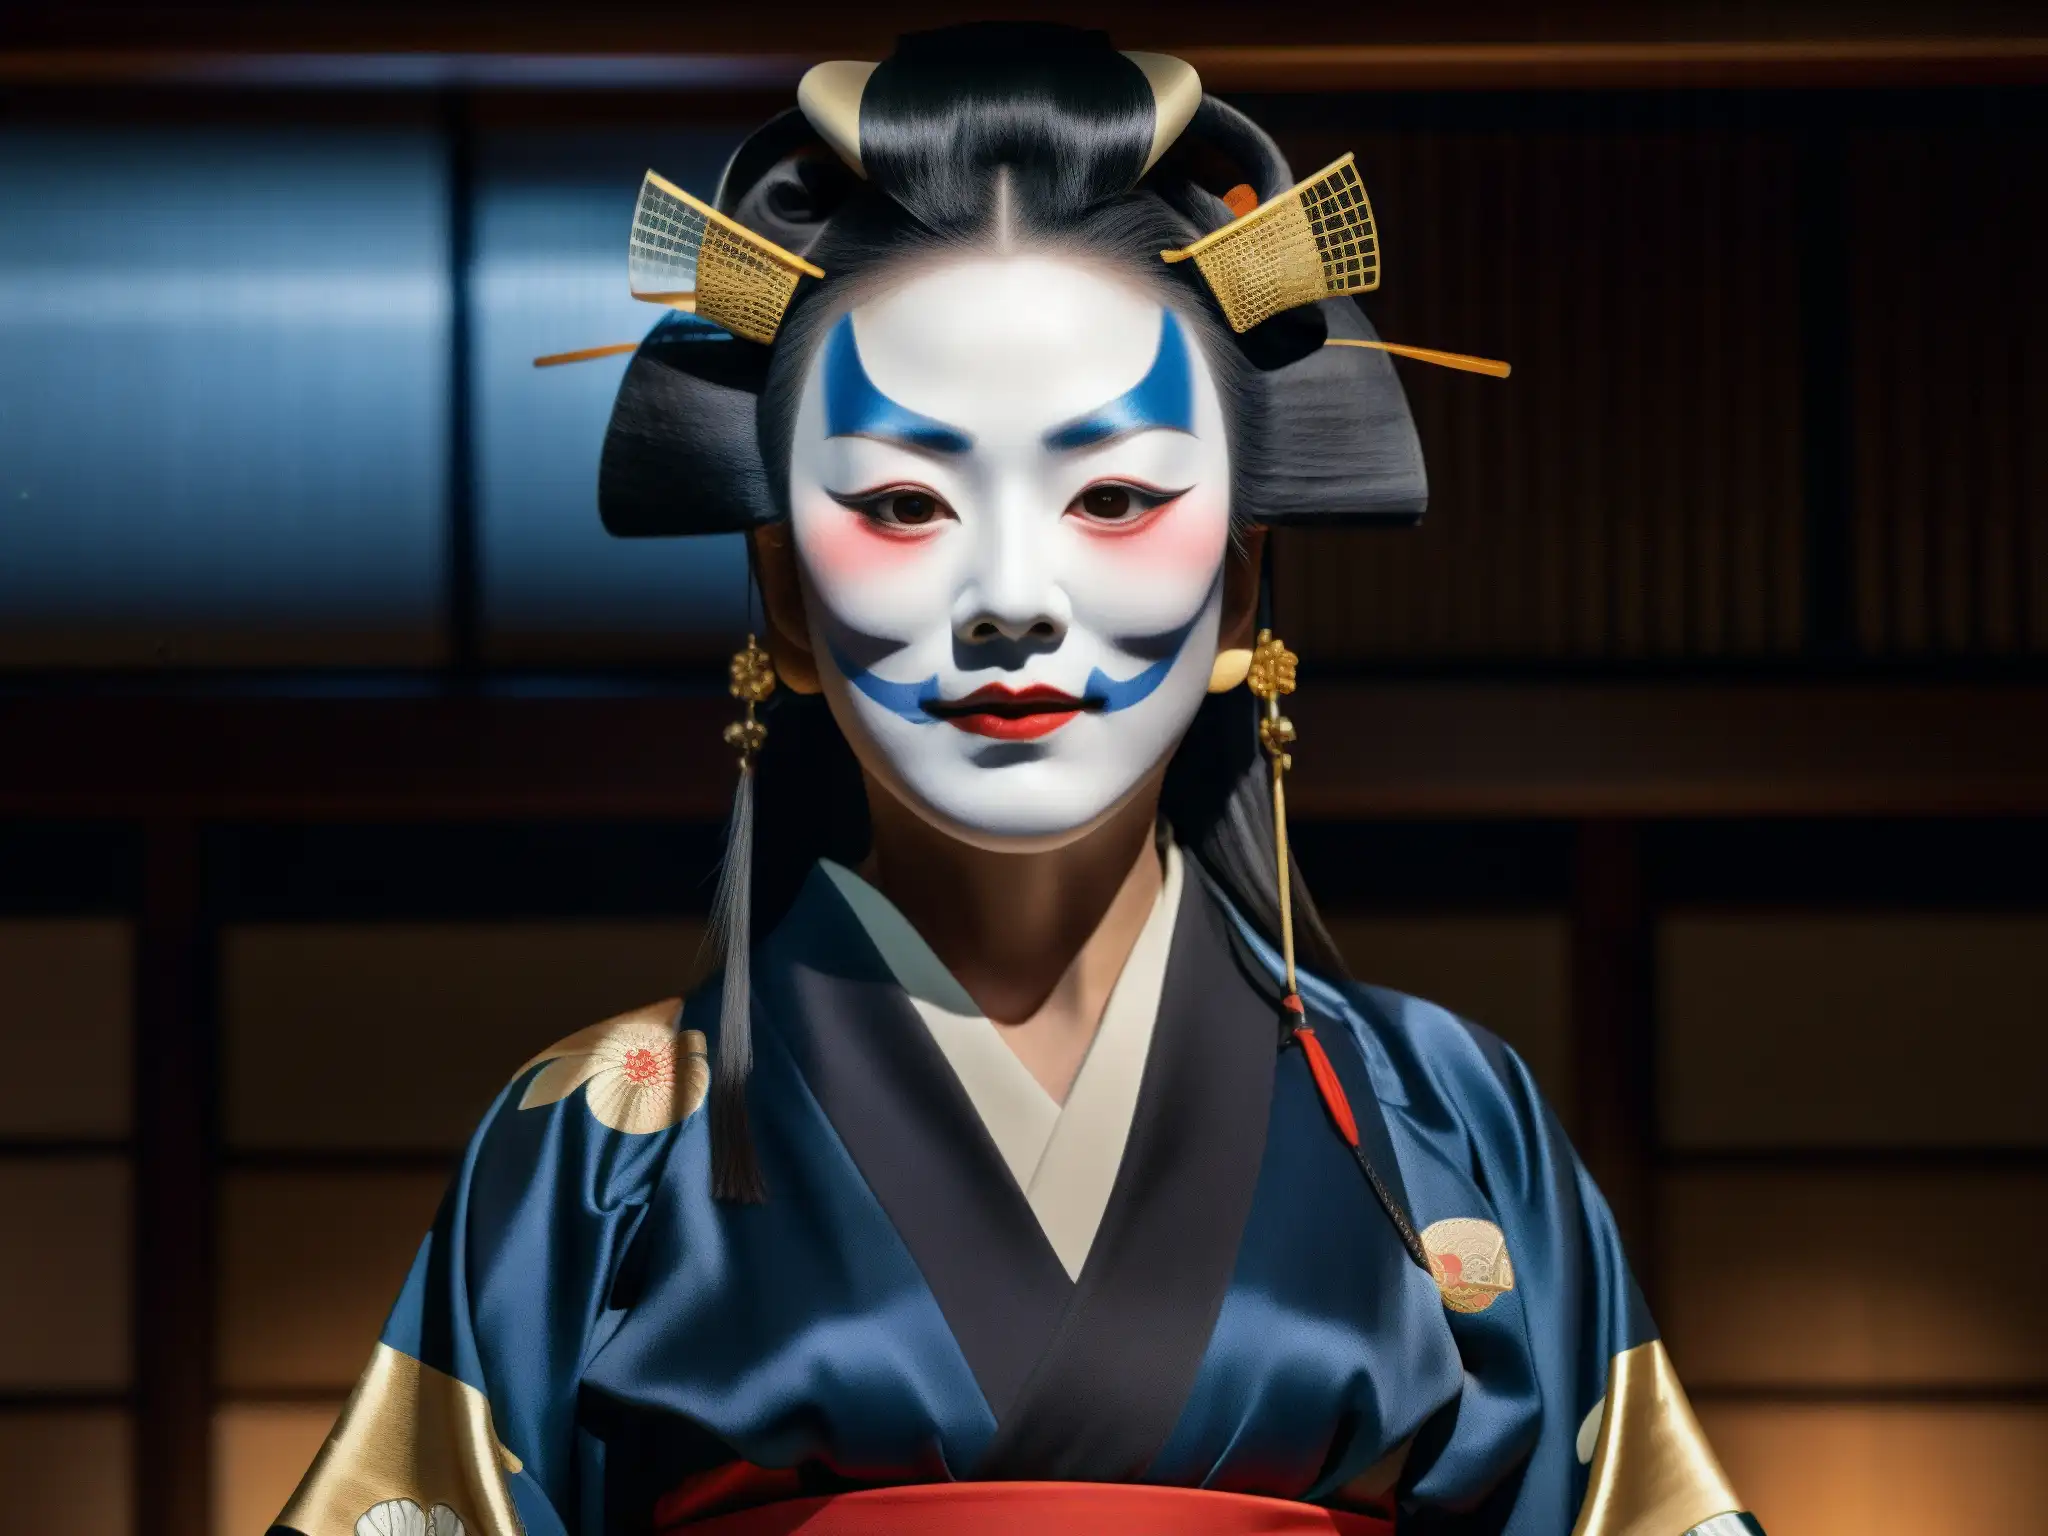 Actriz japonesa interpreta a Kuchisakeonna en un teatro Noh, creando una atmósfera misteriosa y ancestral